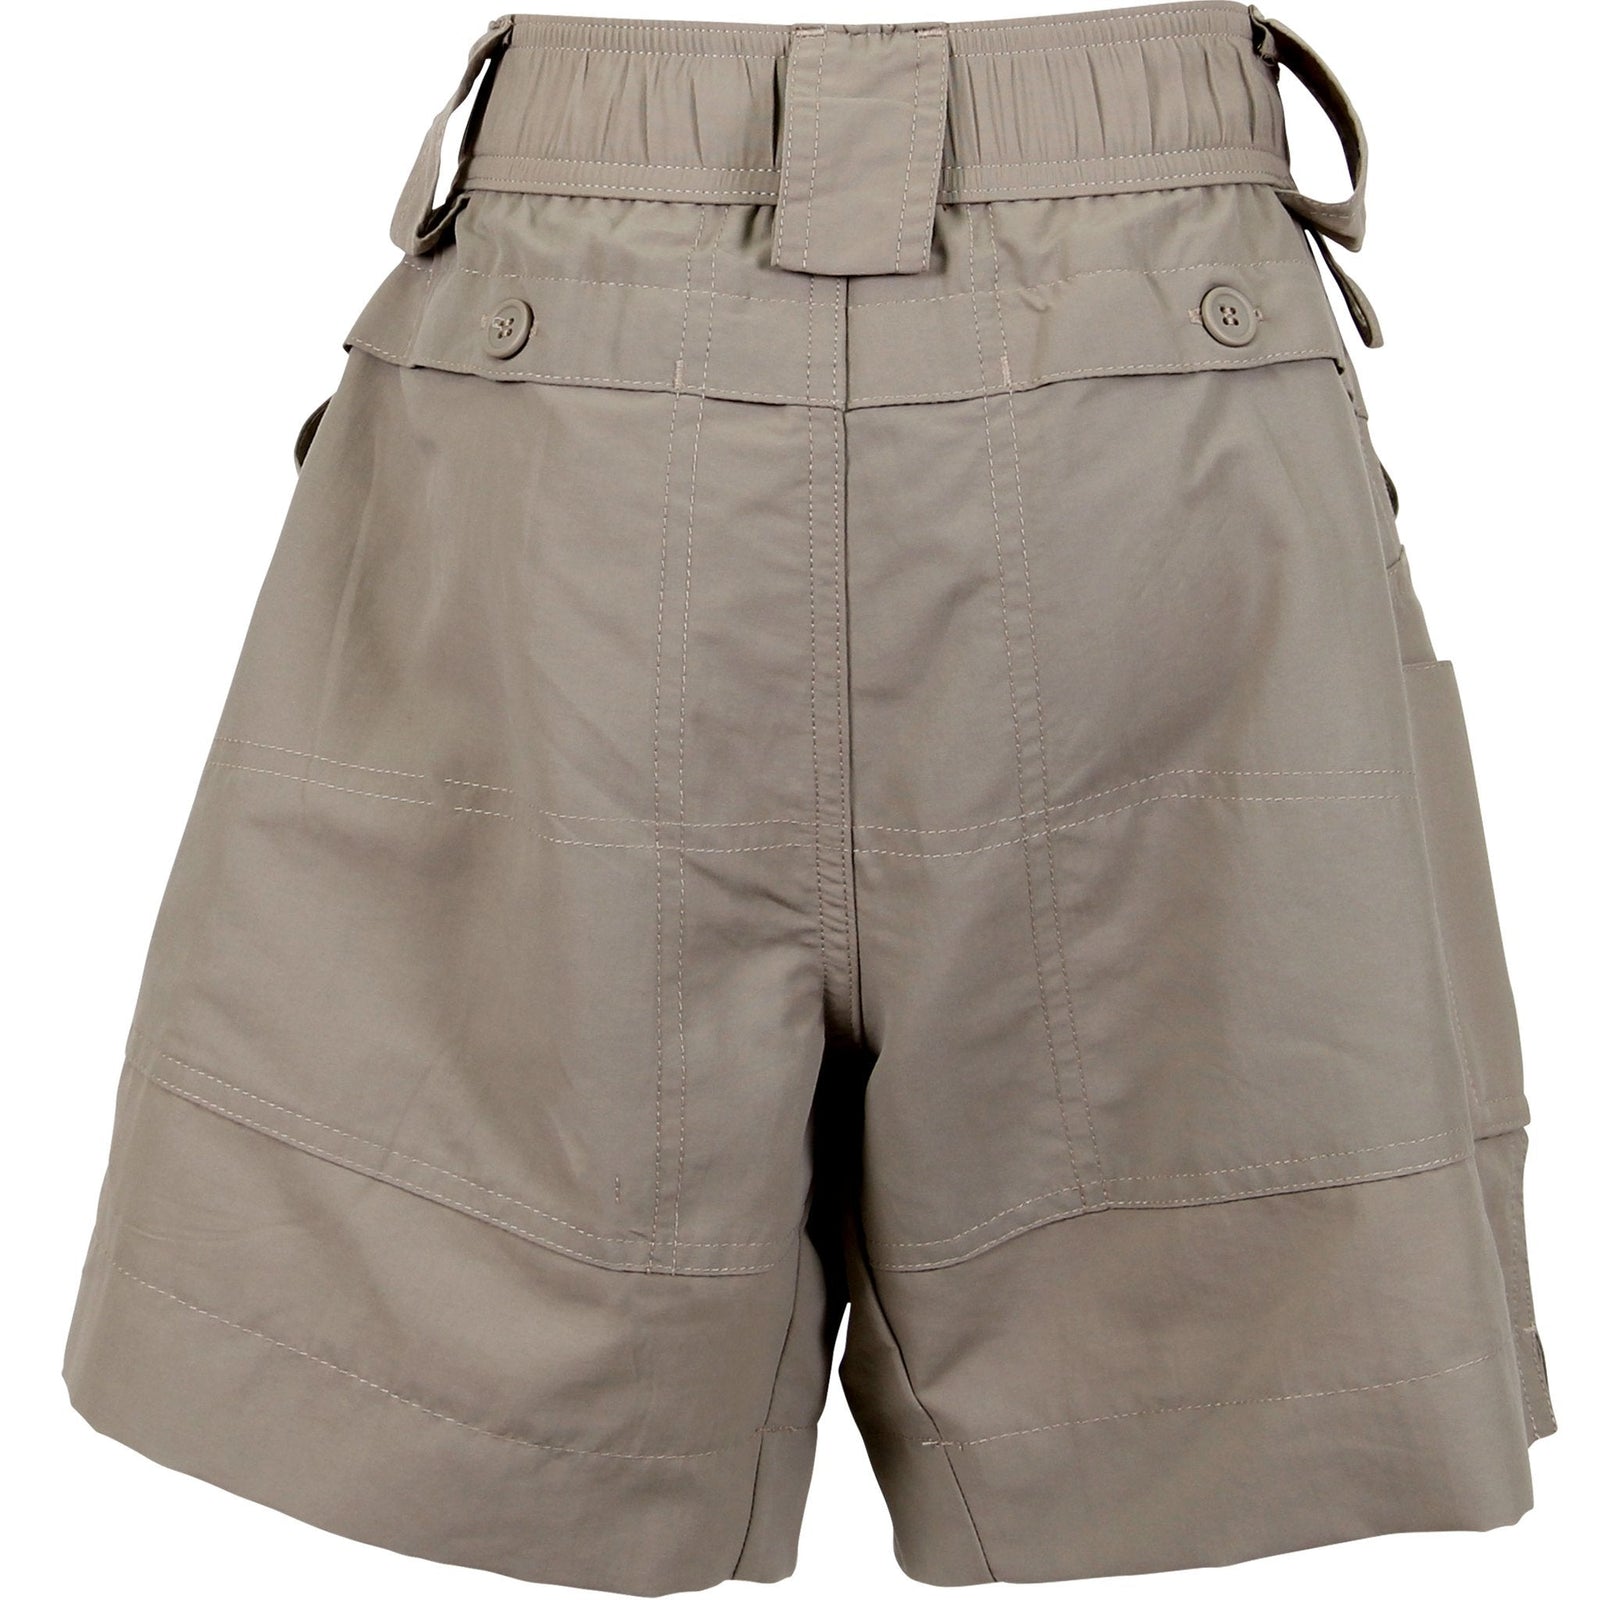 Las mejores ofertas en AFTCO Cargo Shorts for Men